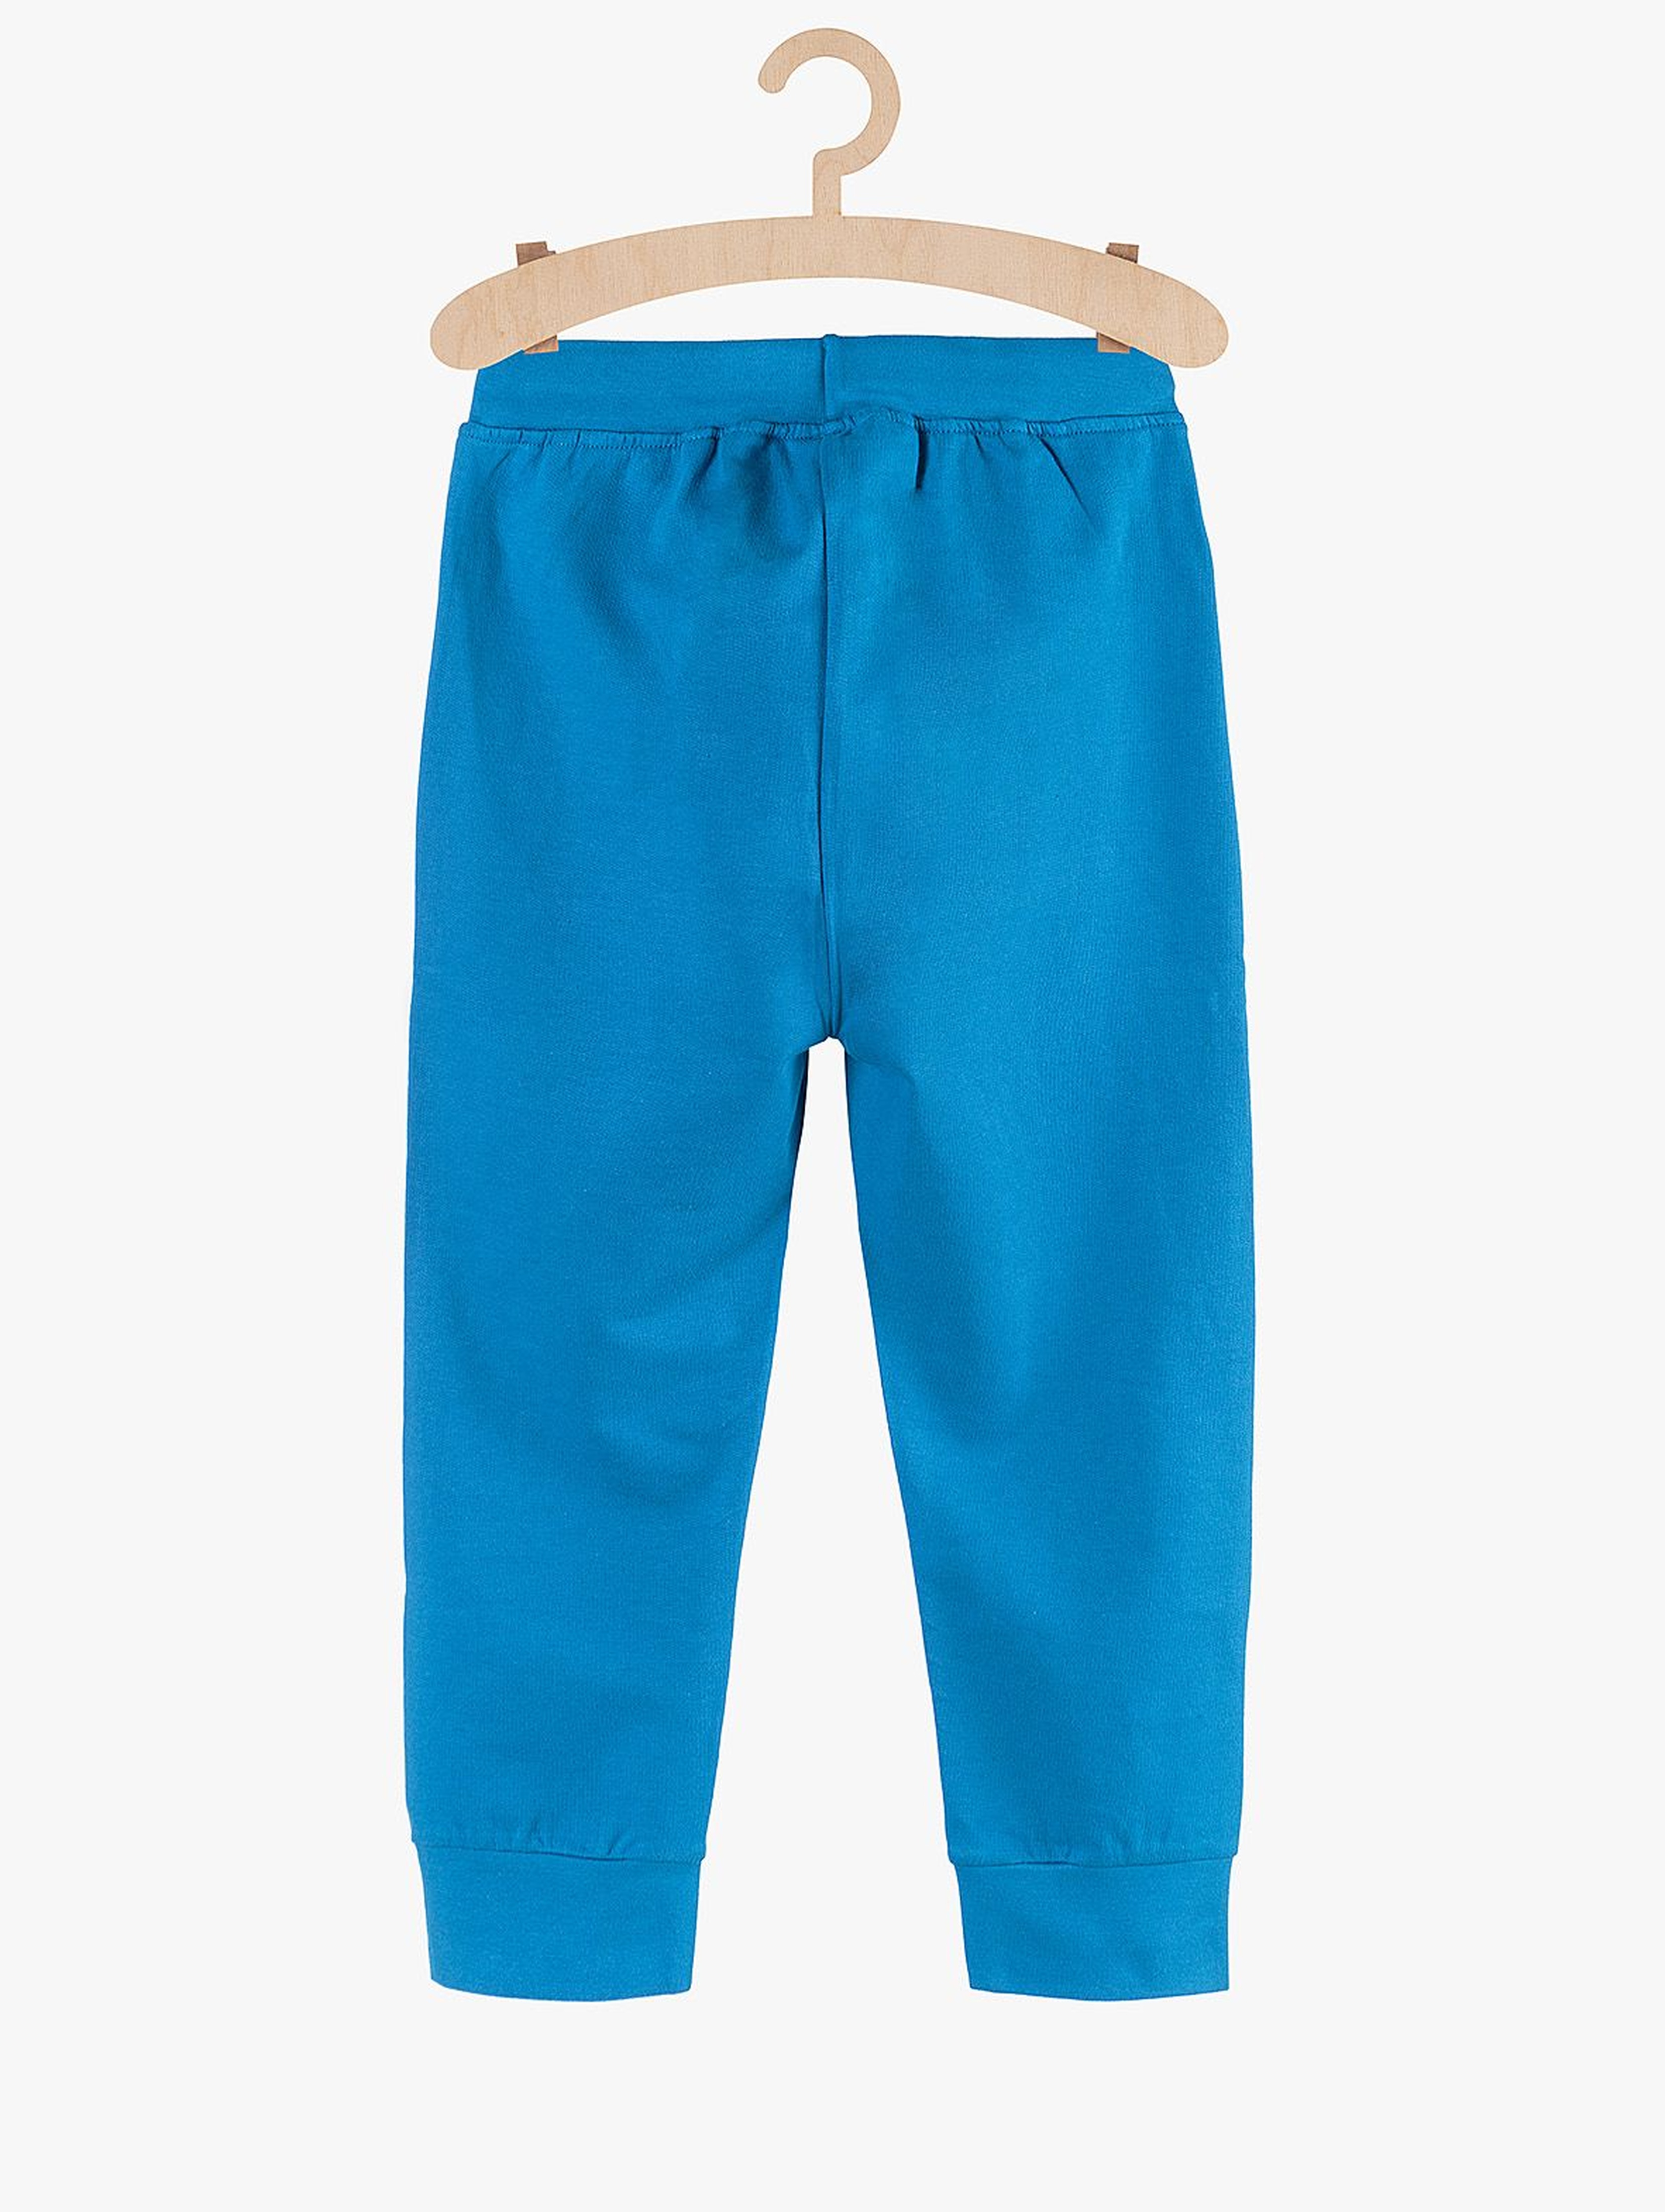 Dresowe spodnie dla chłopca- niebieskie